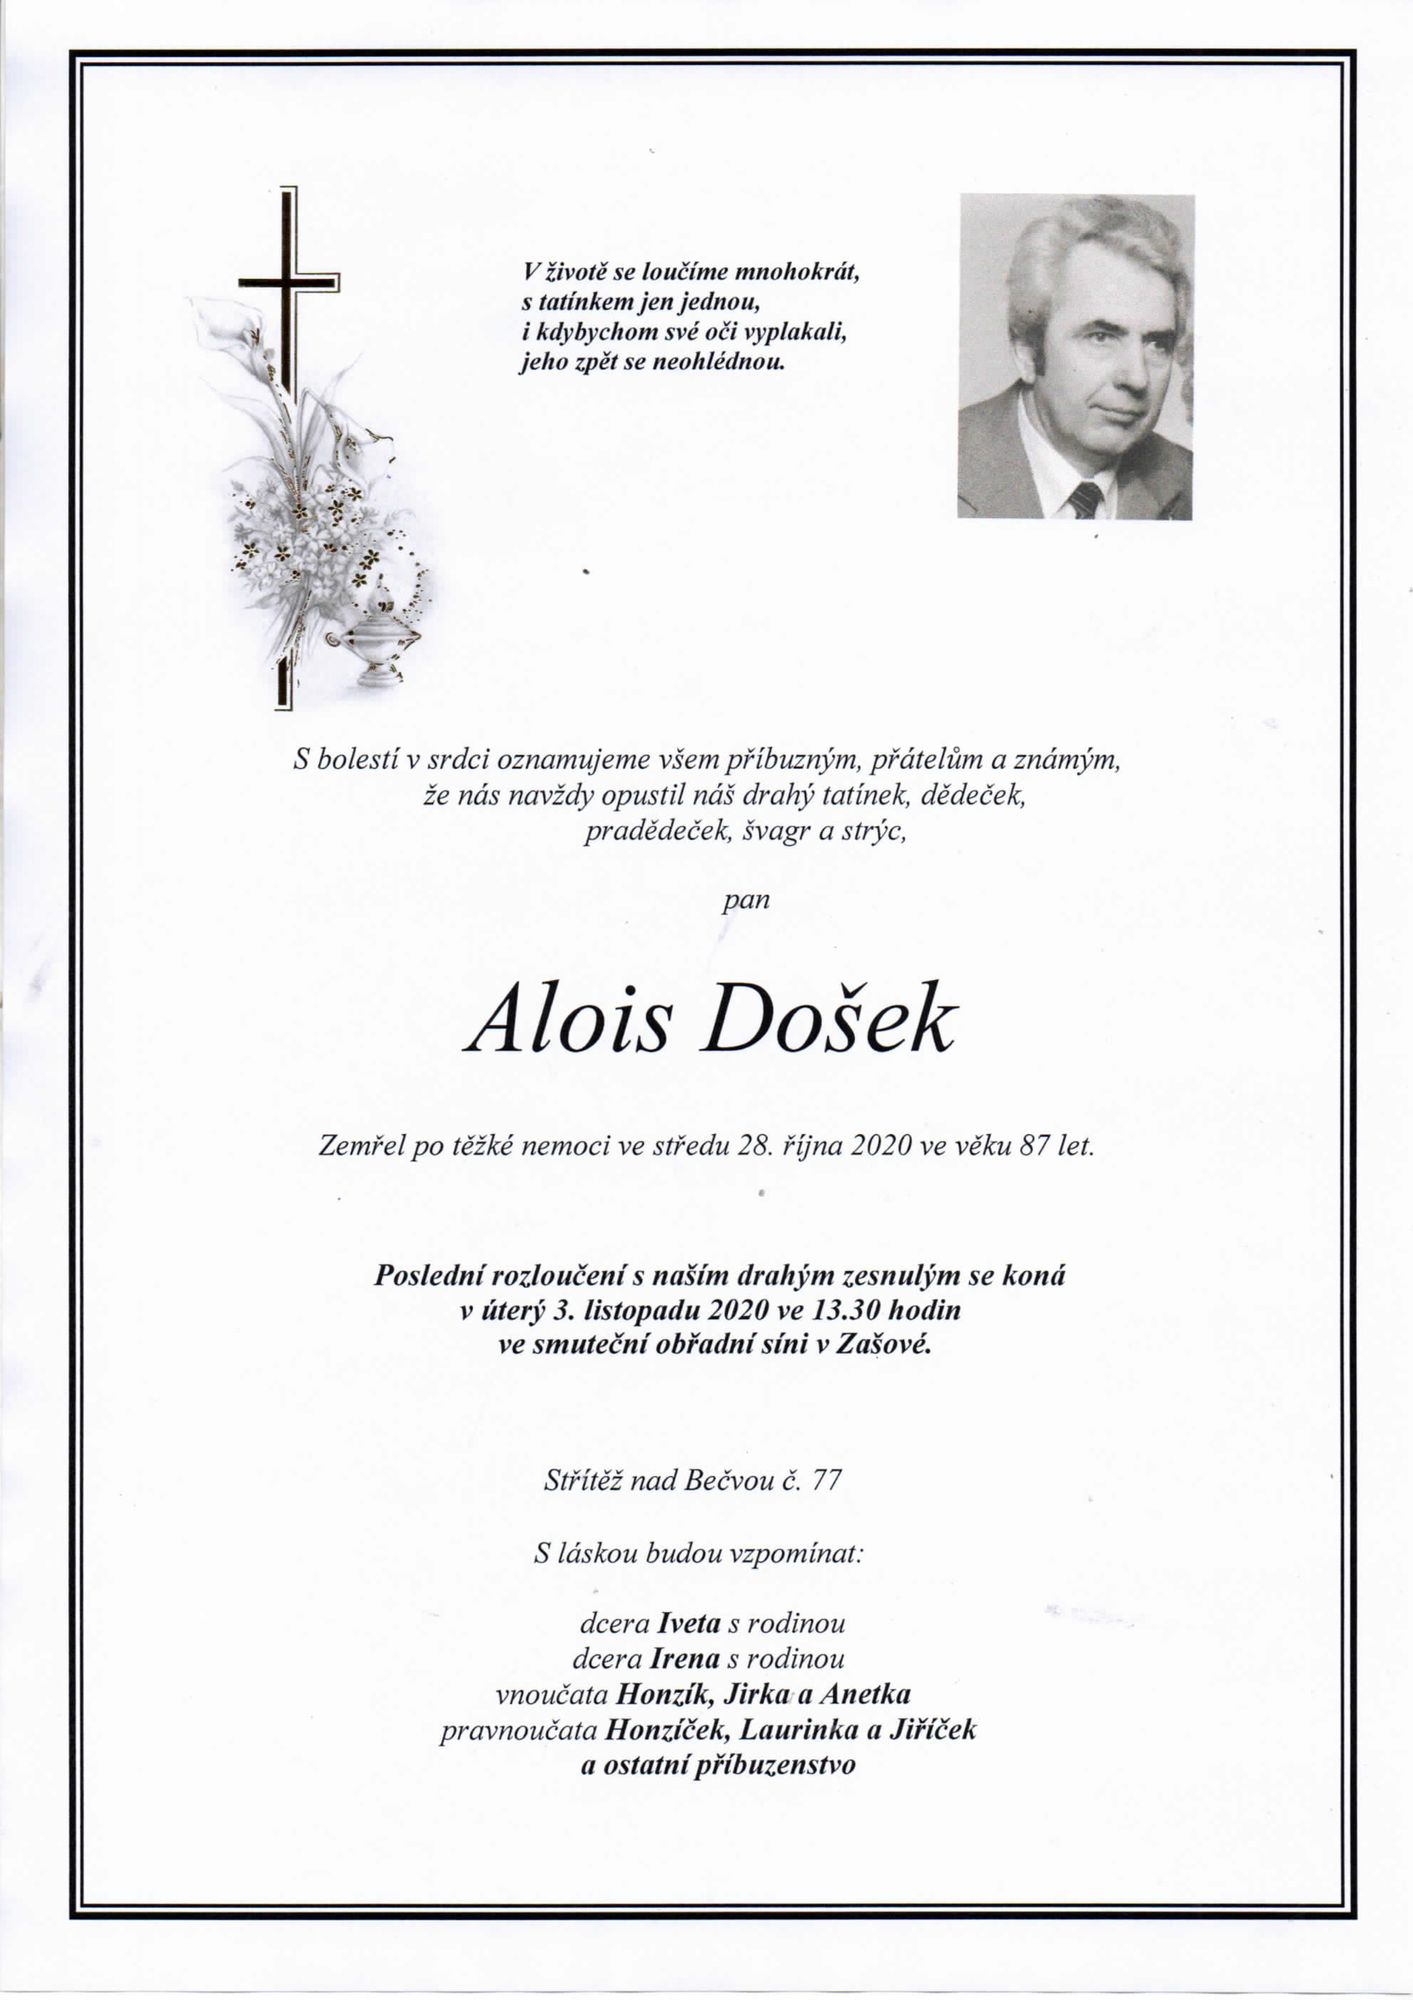 Alois Došek